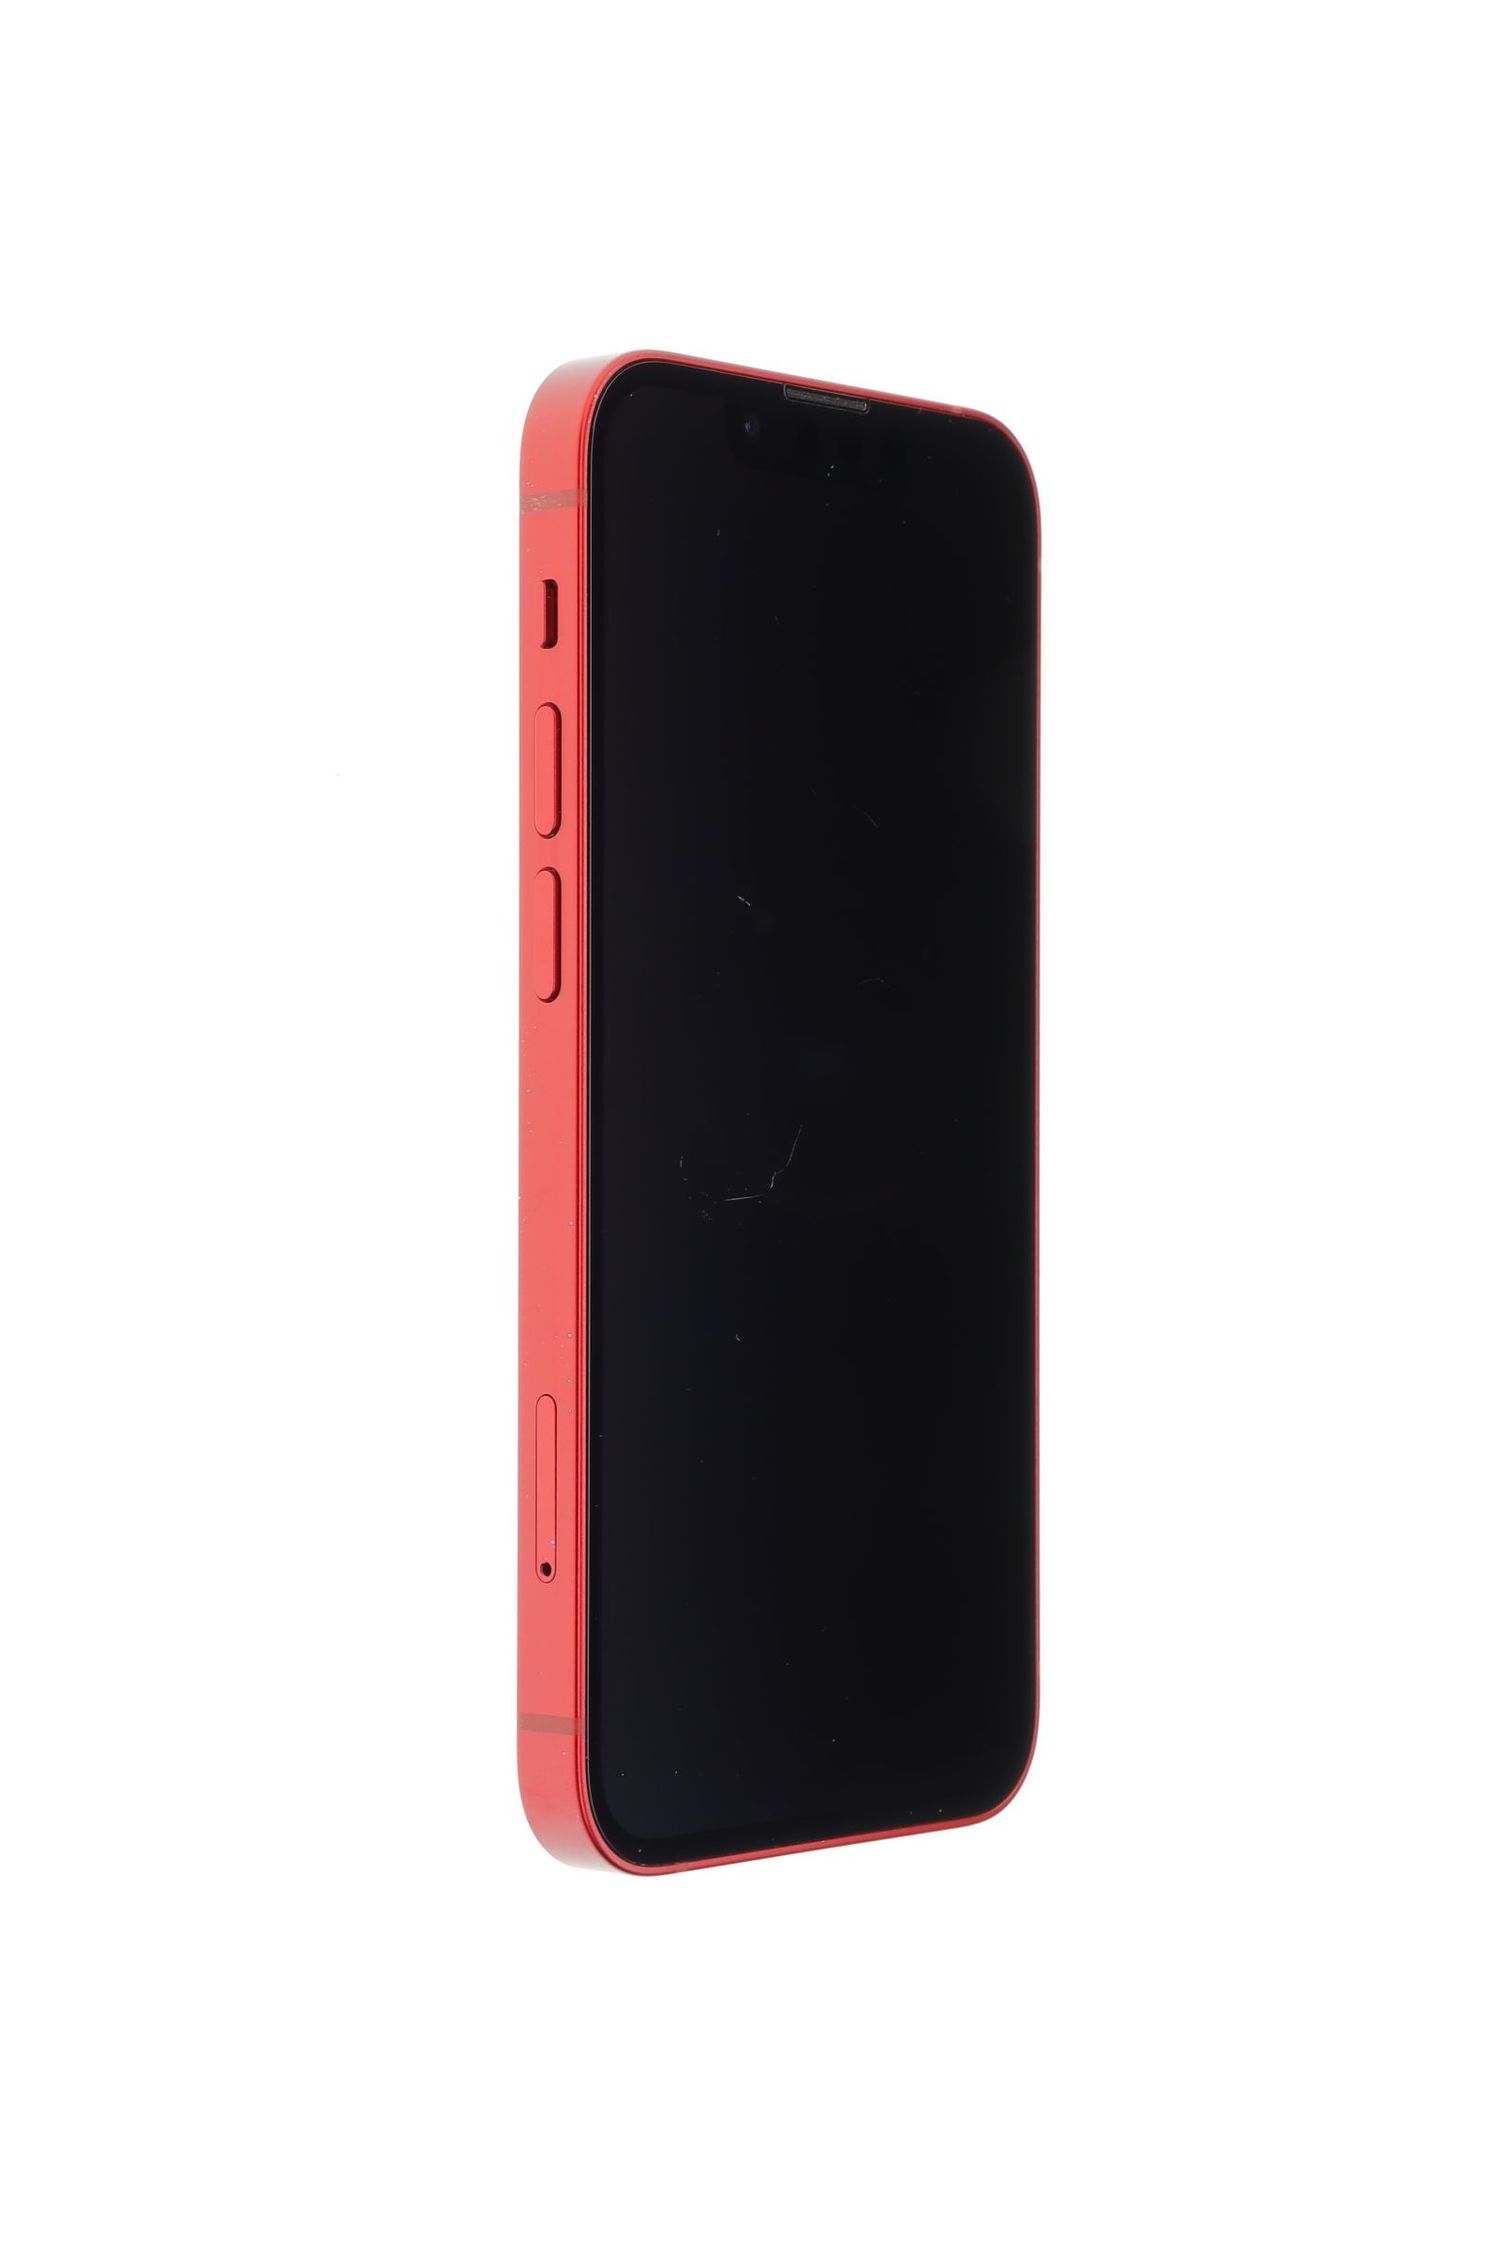 Κινητό τηλέφωνο Apple iPhone 13 mini, Red, 256 GB, Foarte Bun